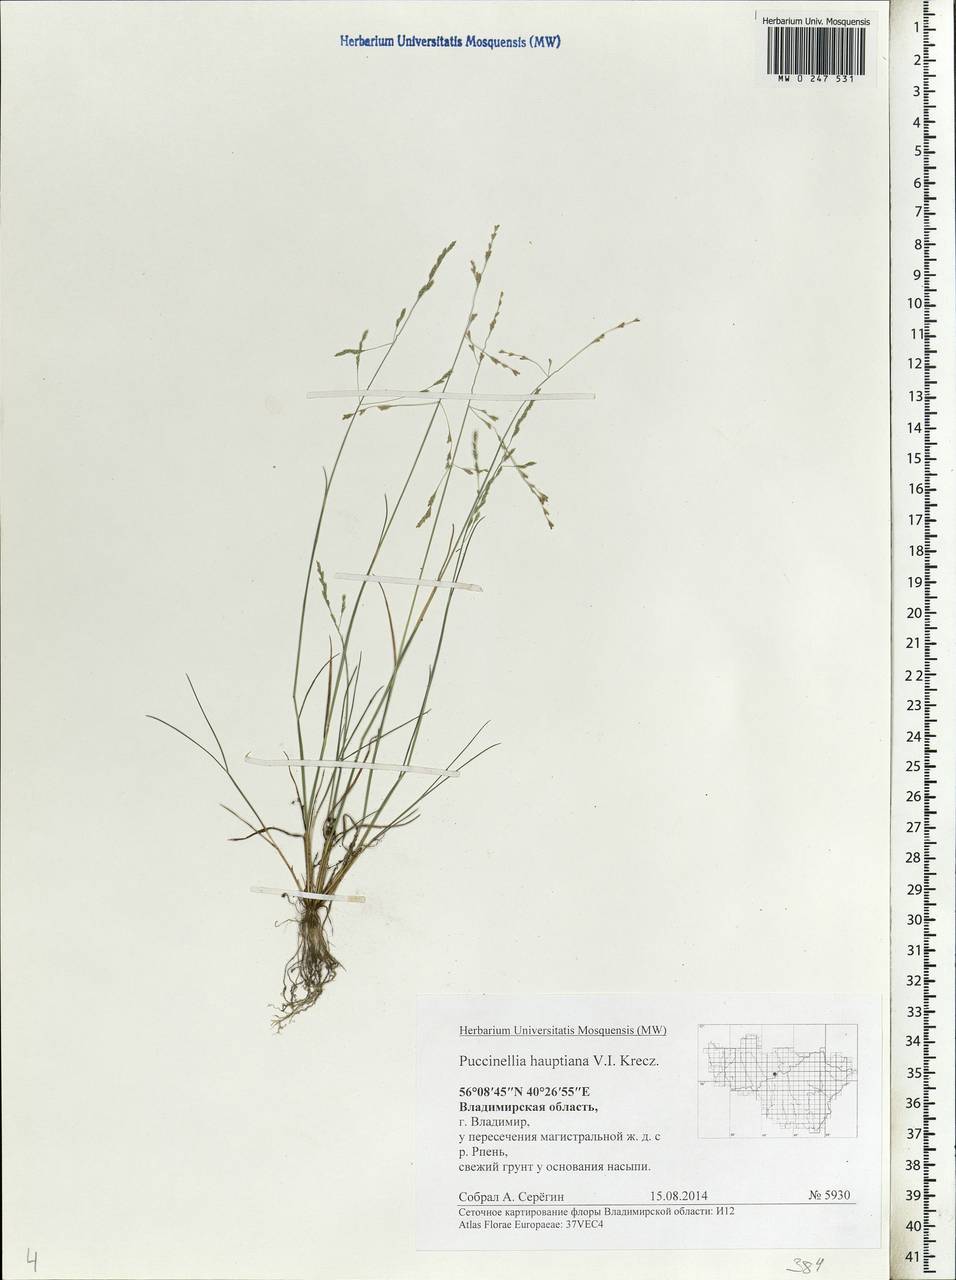 Puccinellia hauptiana (V.I.Krecz.) Kitag., Eastern Europe, Central region (E4) (Russia)